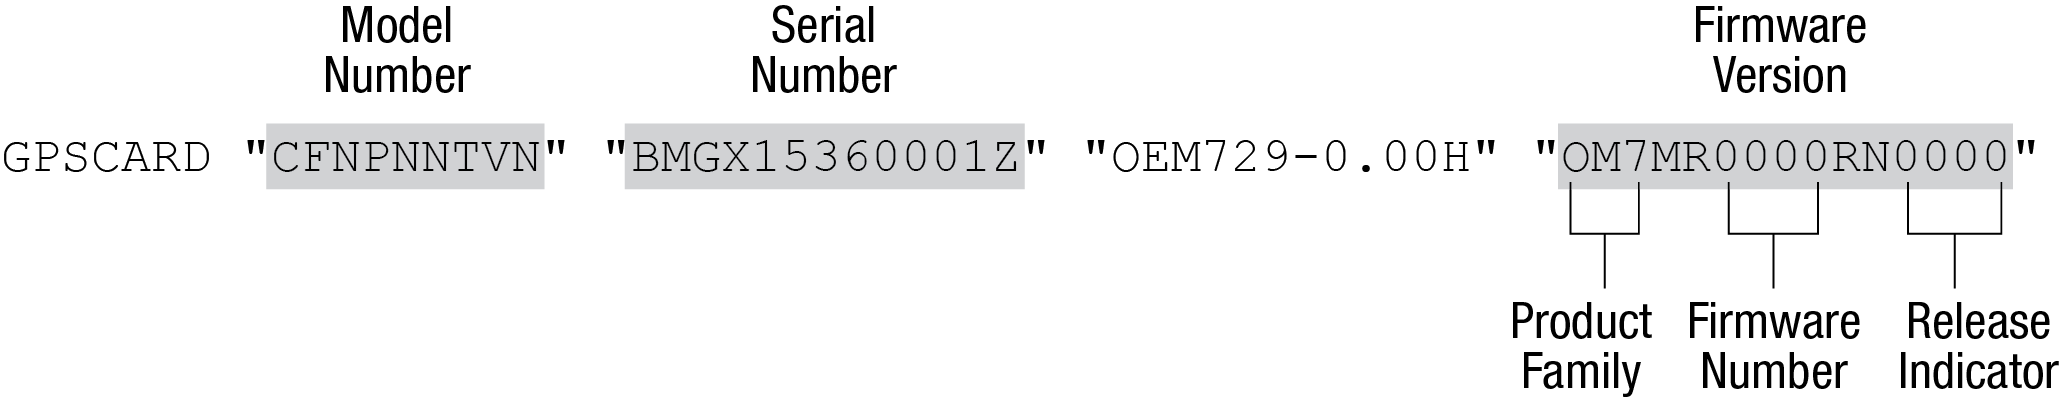 mitcalc authorization code serial